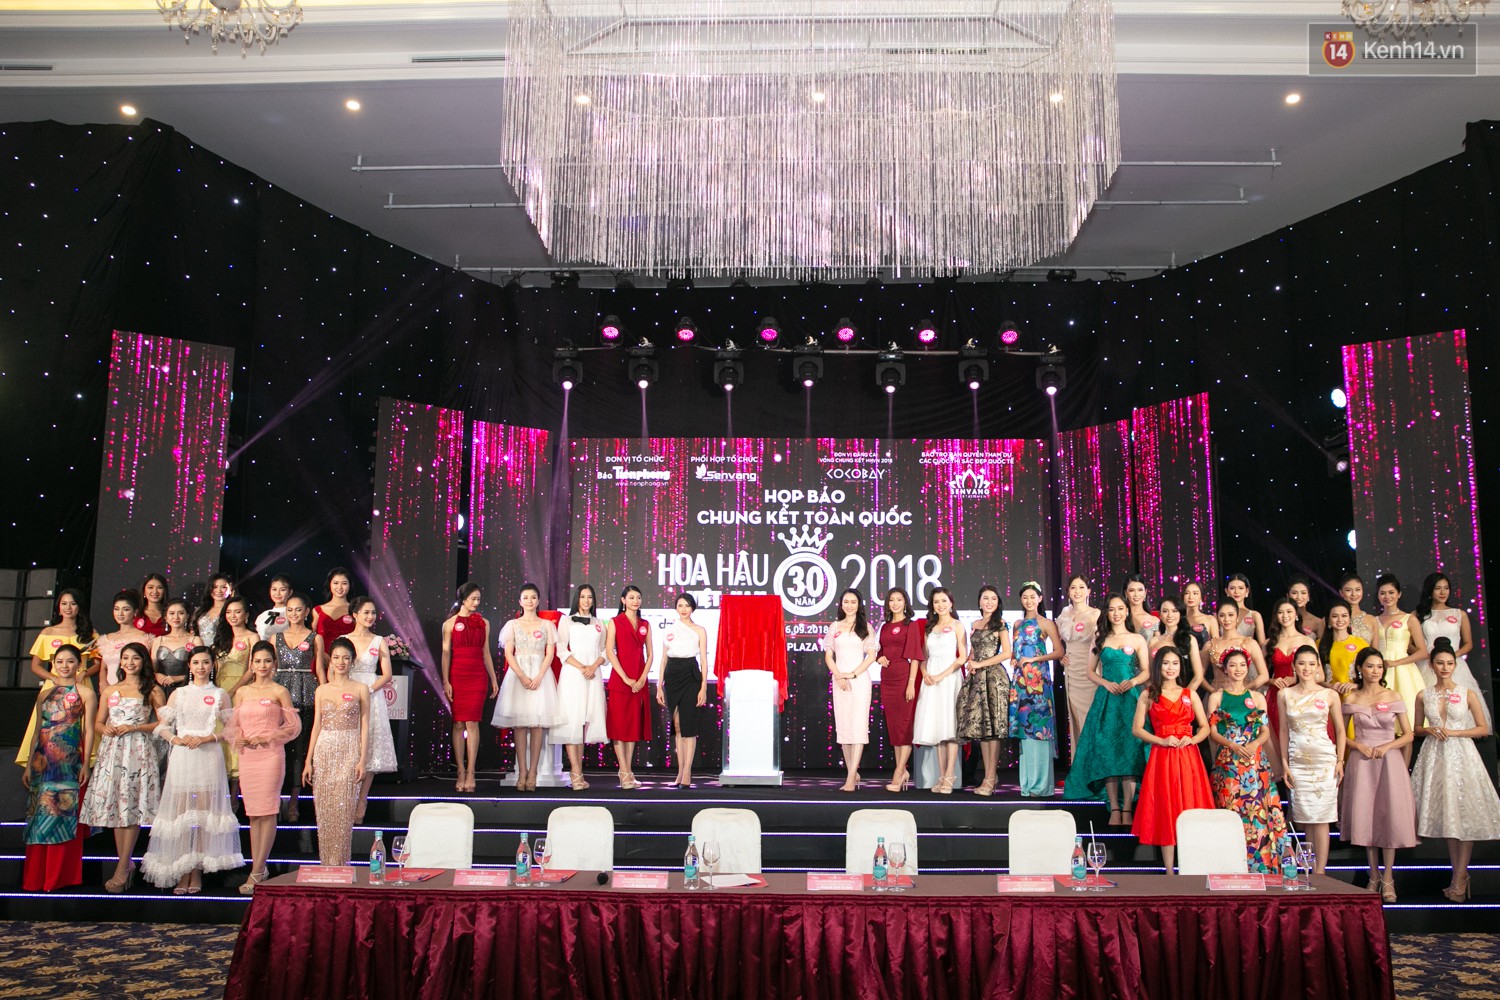 Trước thềm chung kết, hé lộ cận cảnh vương miện, quyền trượng giá trị của Tân Hoa hậu Việt Nam 2018 - Ảnh 11.